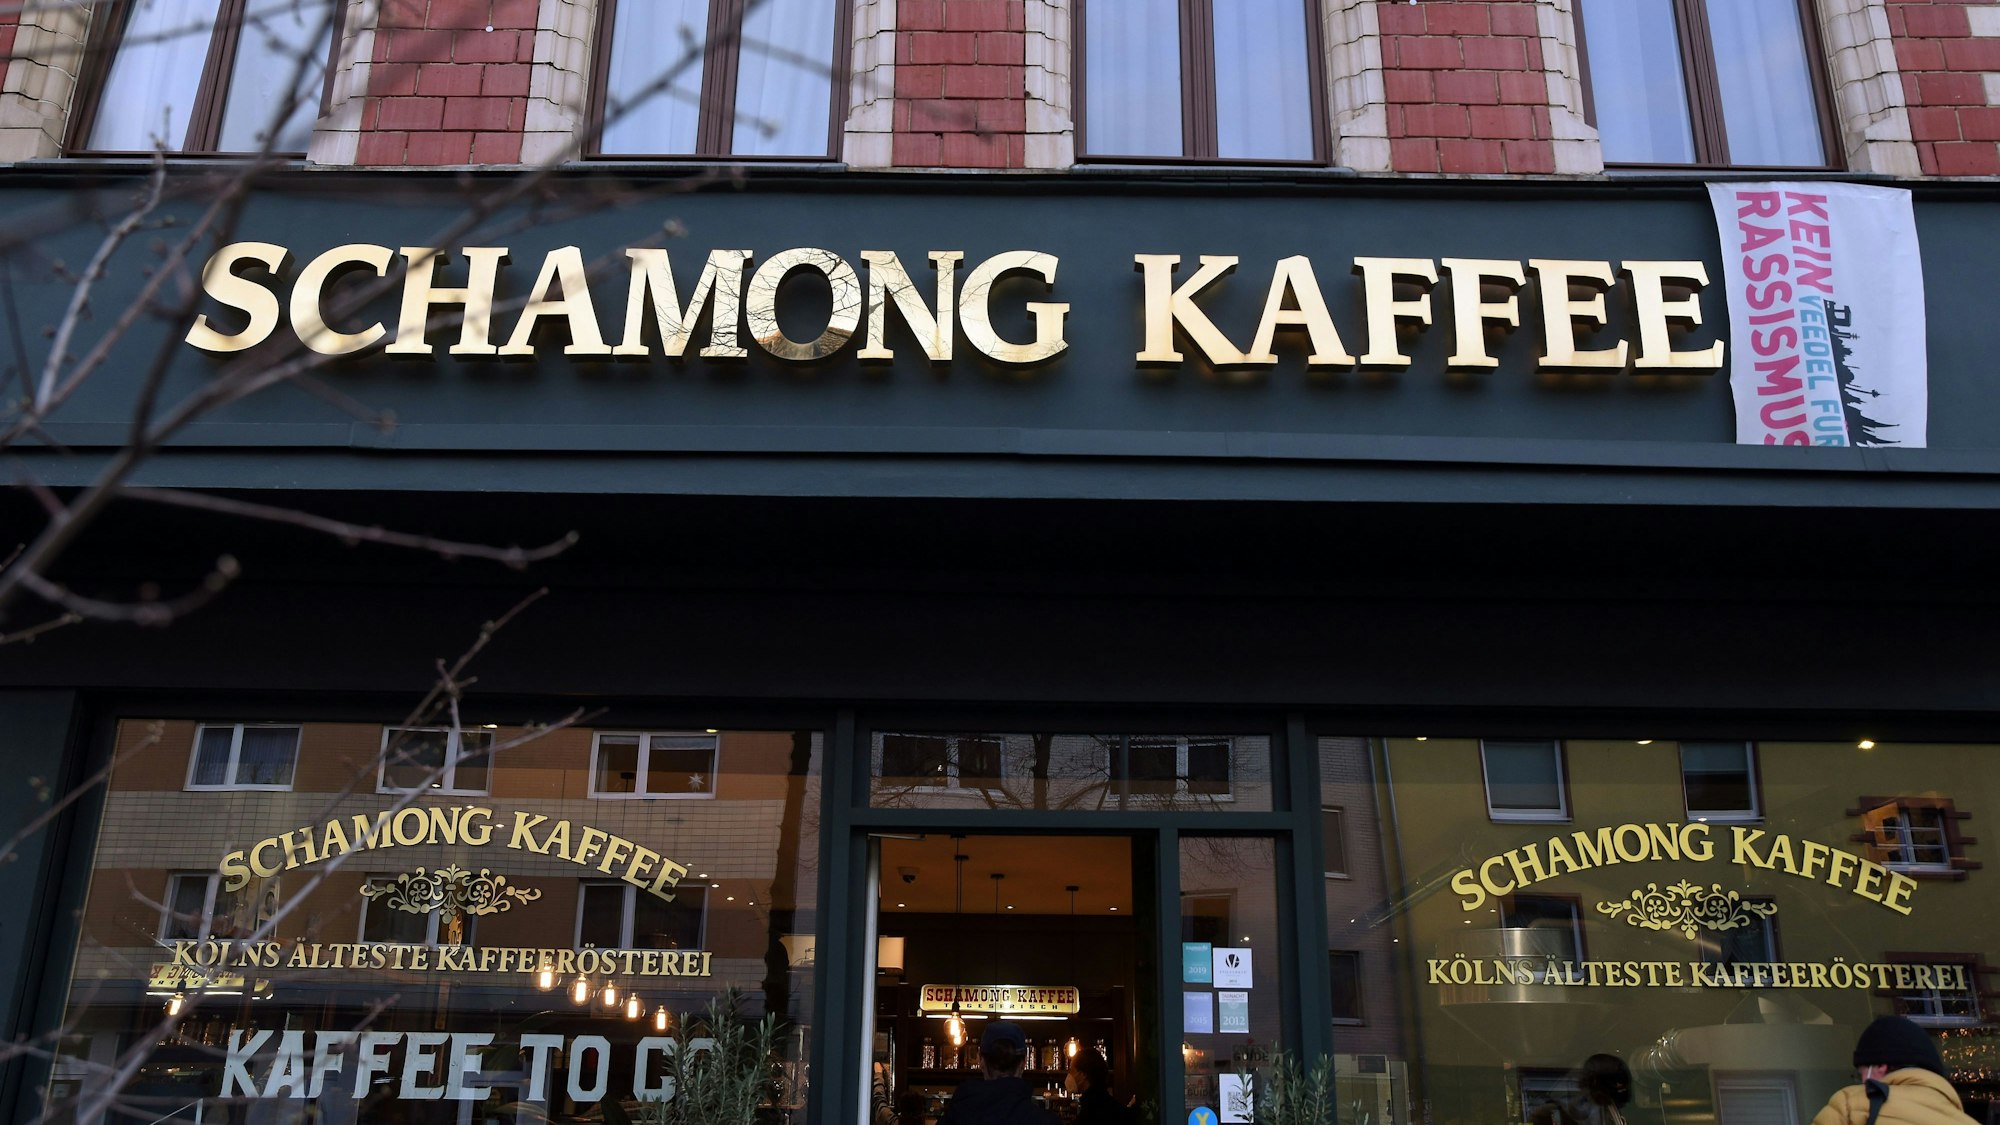 Schamong Kaffee, Kölns älteste Kaffeerösterei in Ehrenfeld.